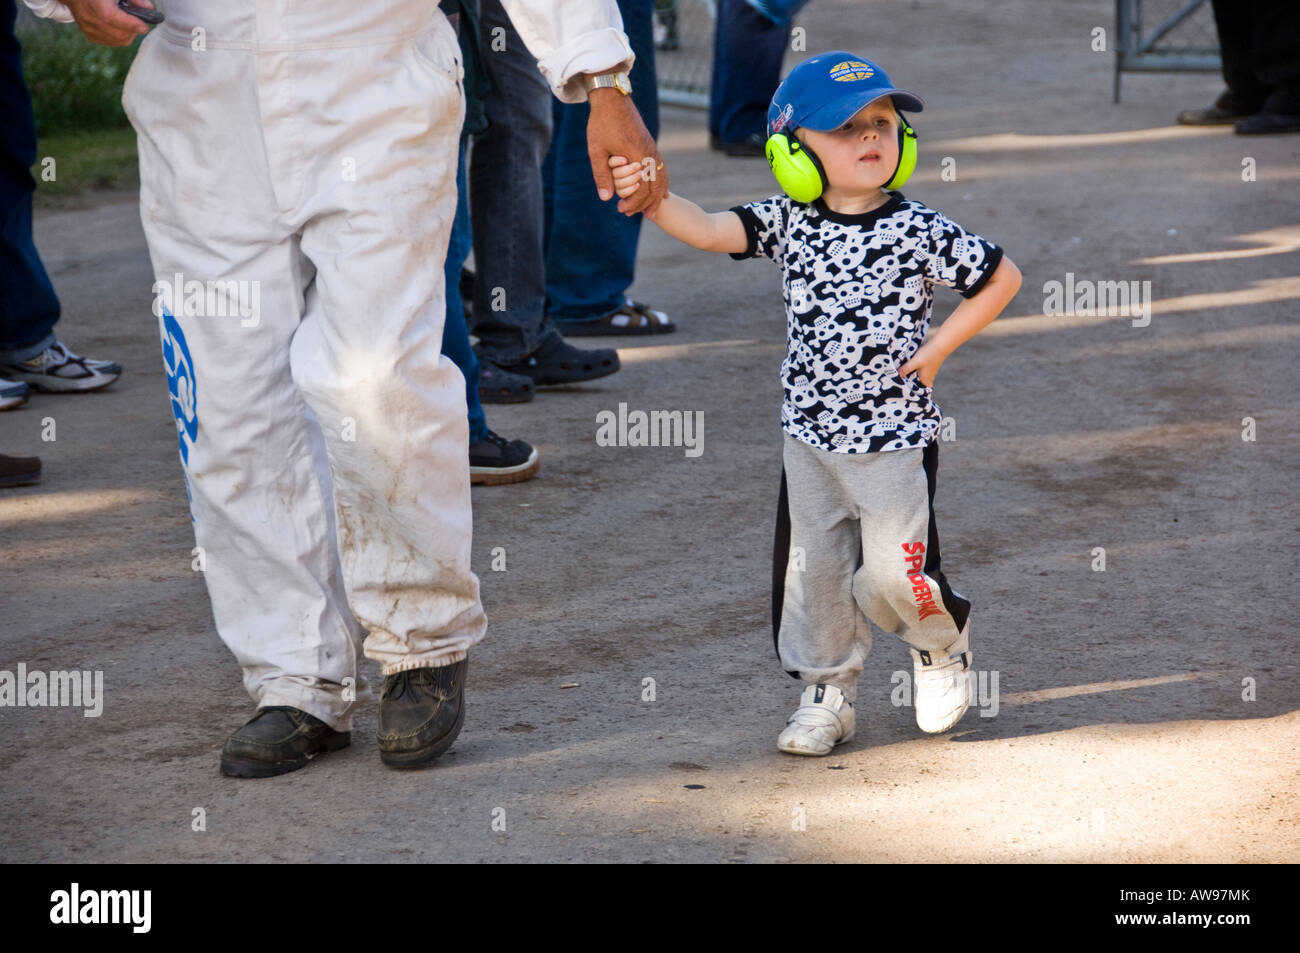 Kleiner Junge in einer Grube Speedway mit Gehörschutz auf Stockfotografie -  Alamy